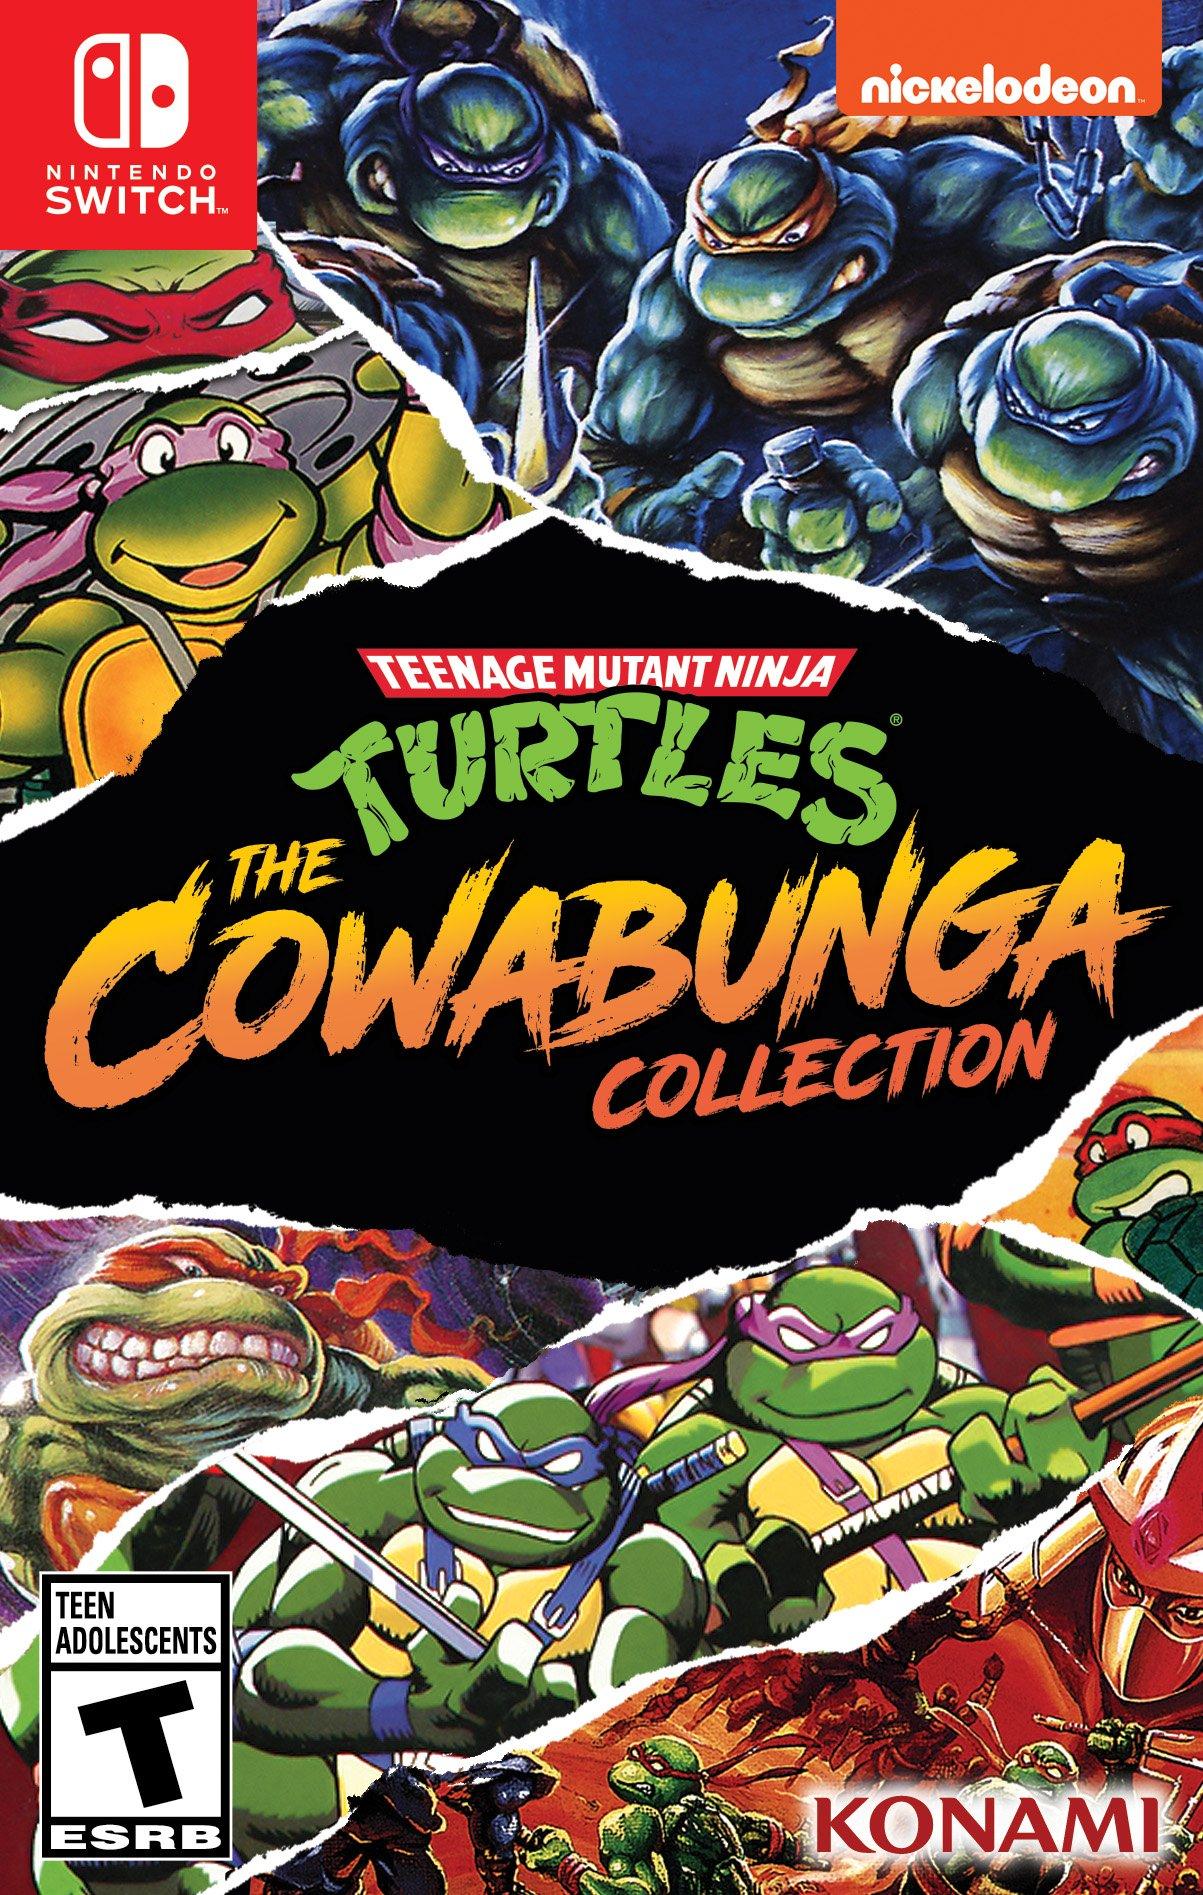 Cowabunga Mutant Switch GameStop Collection Nintendo Nintendo Ninja Switch - | Teenage Turtles: | The